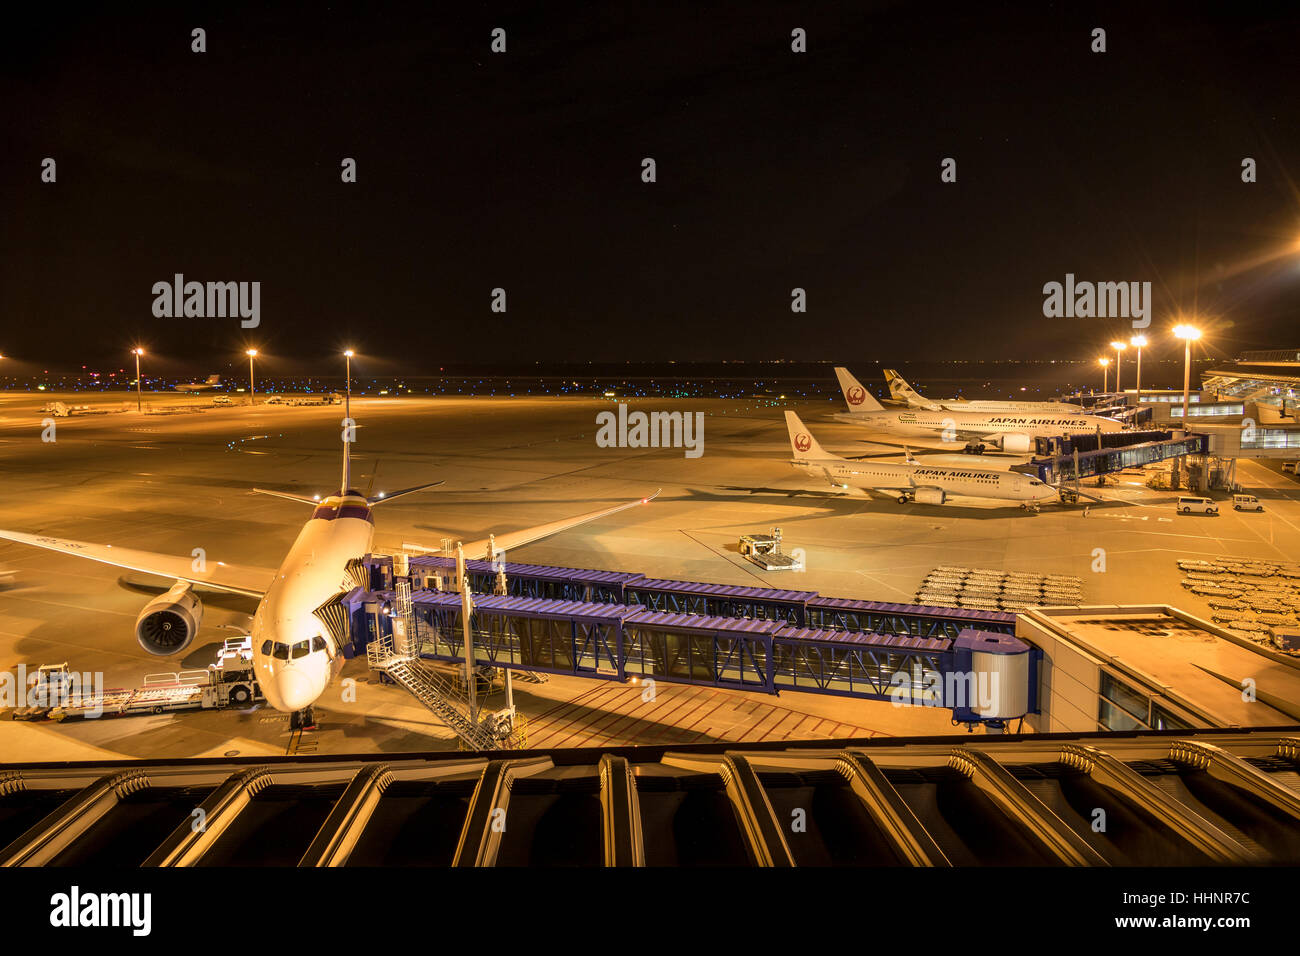 Airport at night immagini e fotografie stock ad alta risoluzione - Alamy